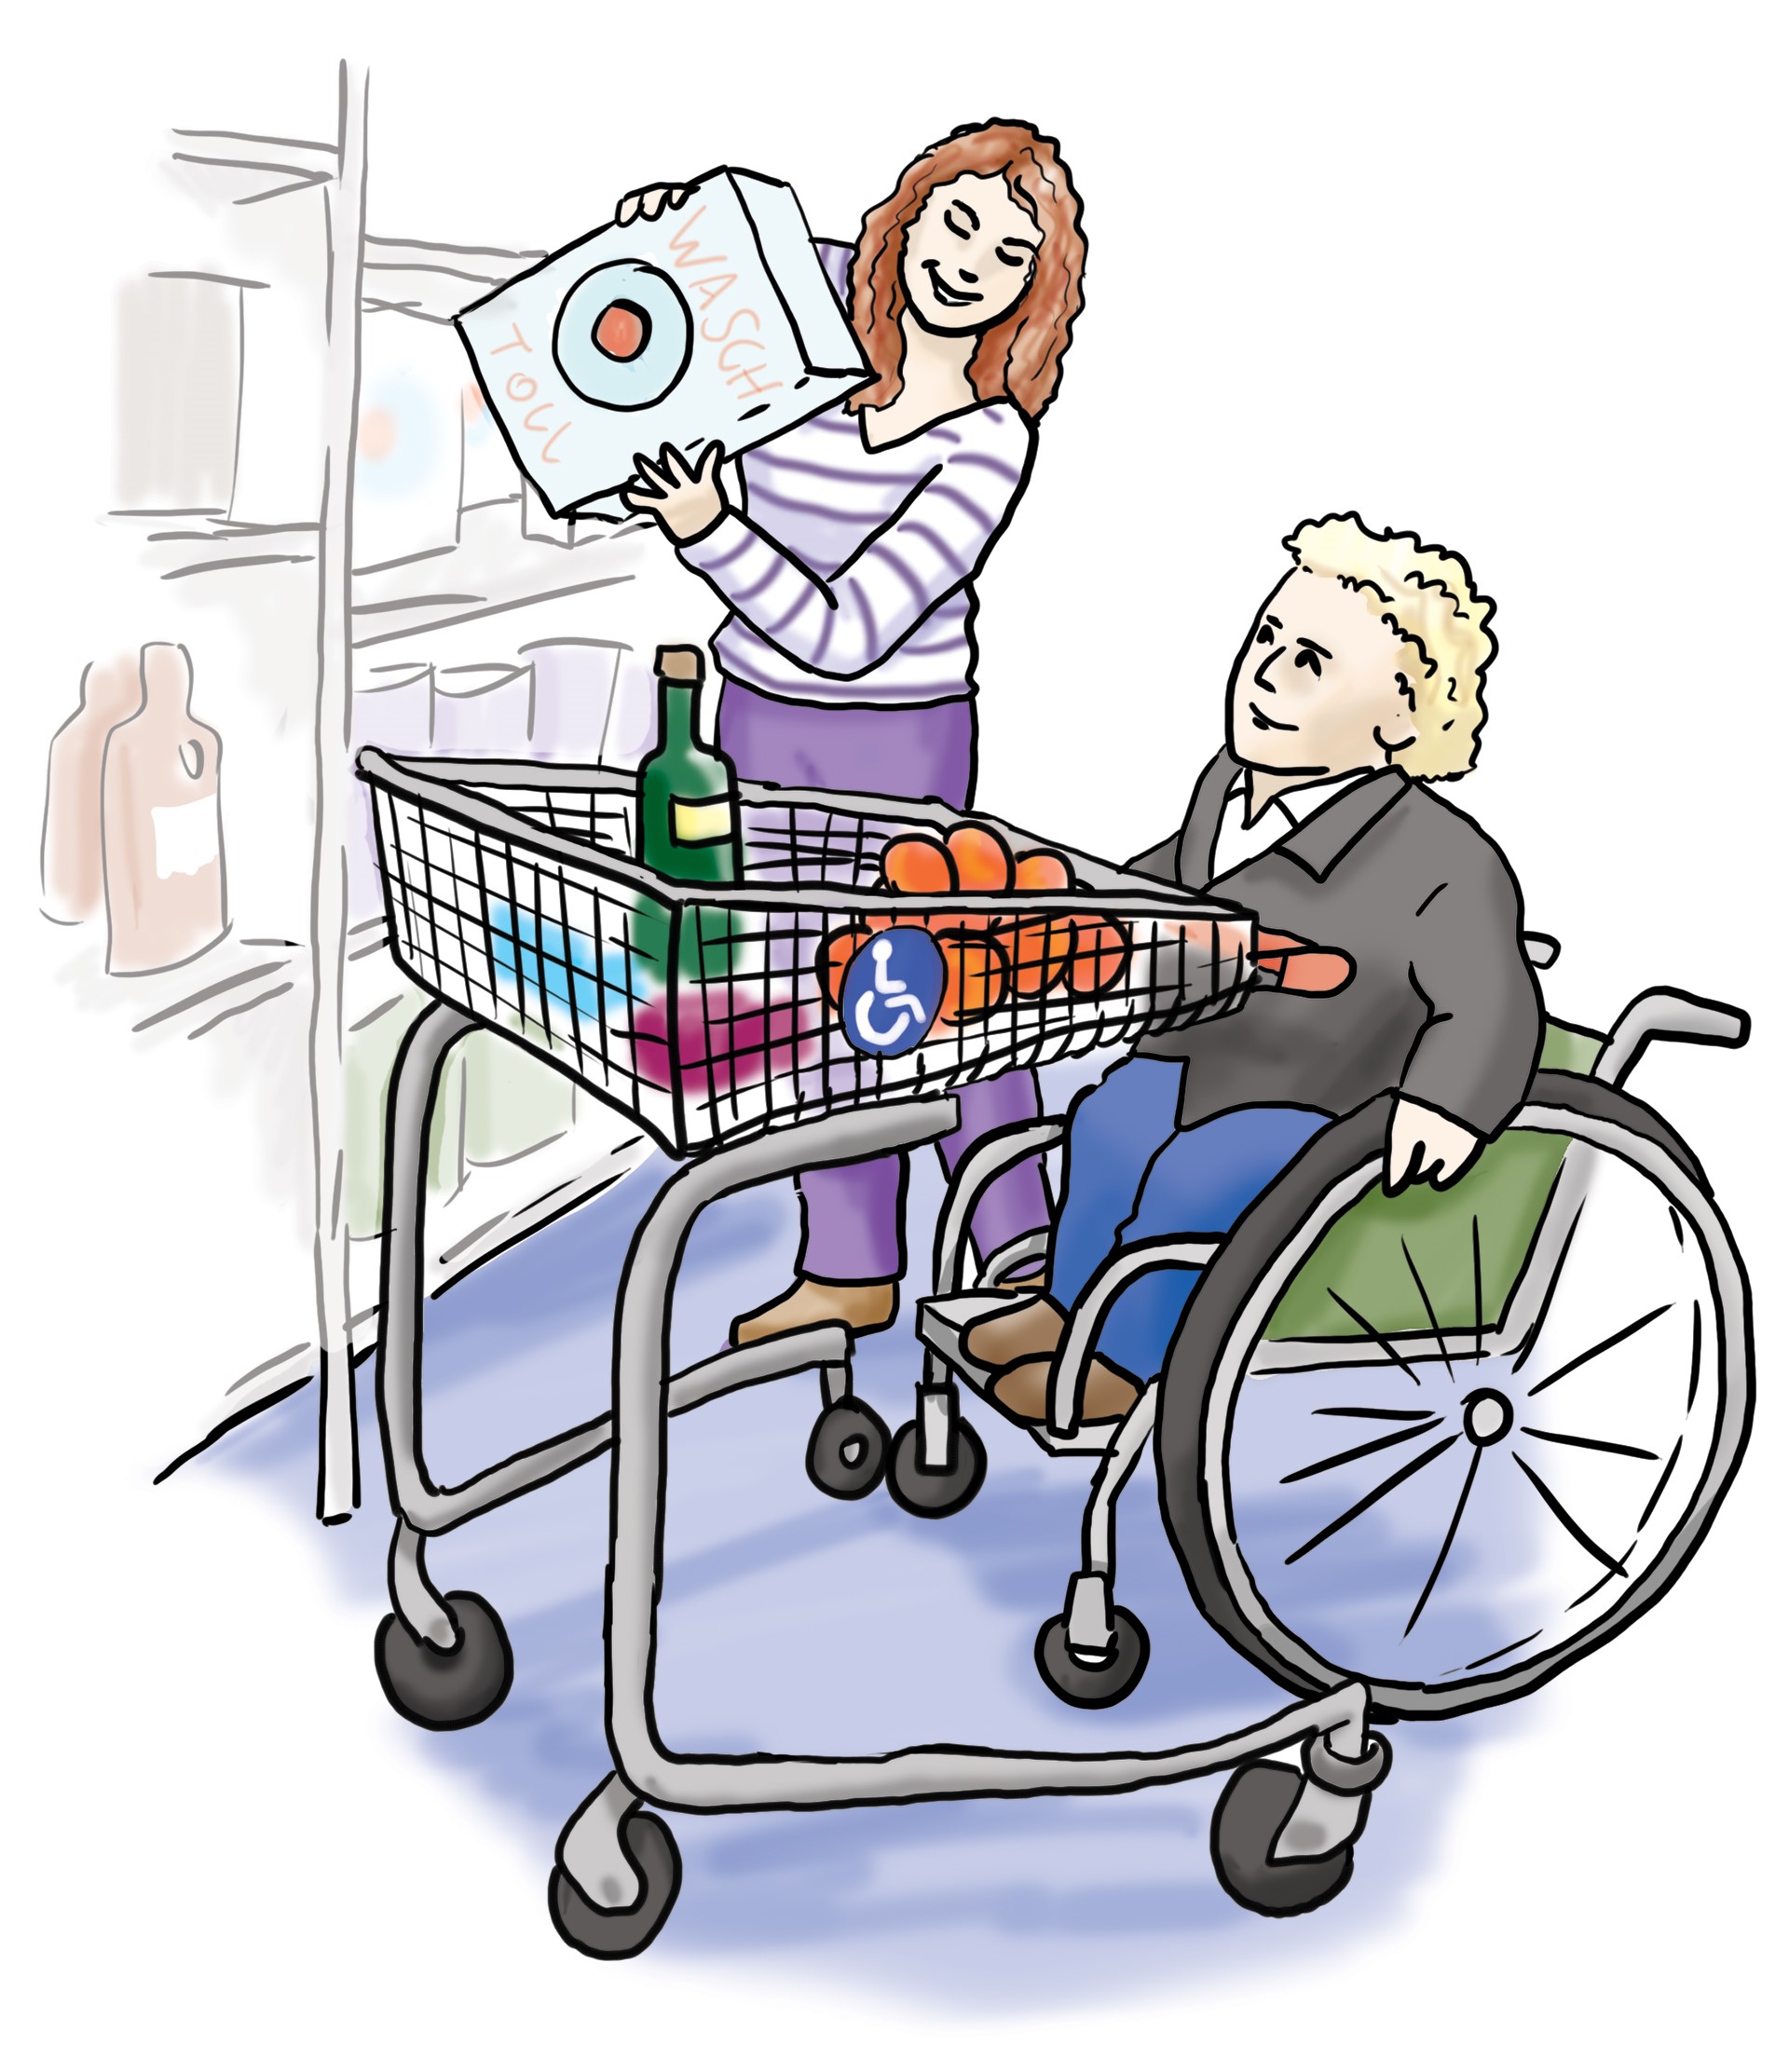 zwei Personen im Einkaufsladen, eine Person sitzt im Rollstuhl und schiebt den Einkaufswagen, die zweite Person steht daneben und legt eine Packung mit Waschpulver in den Wagen. 